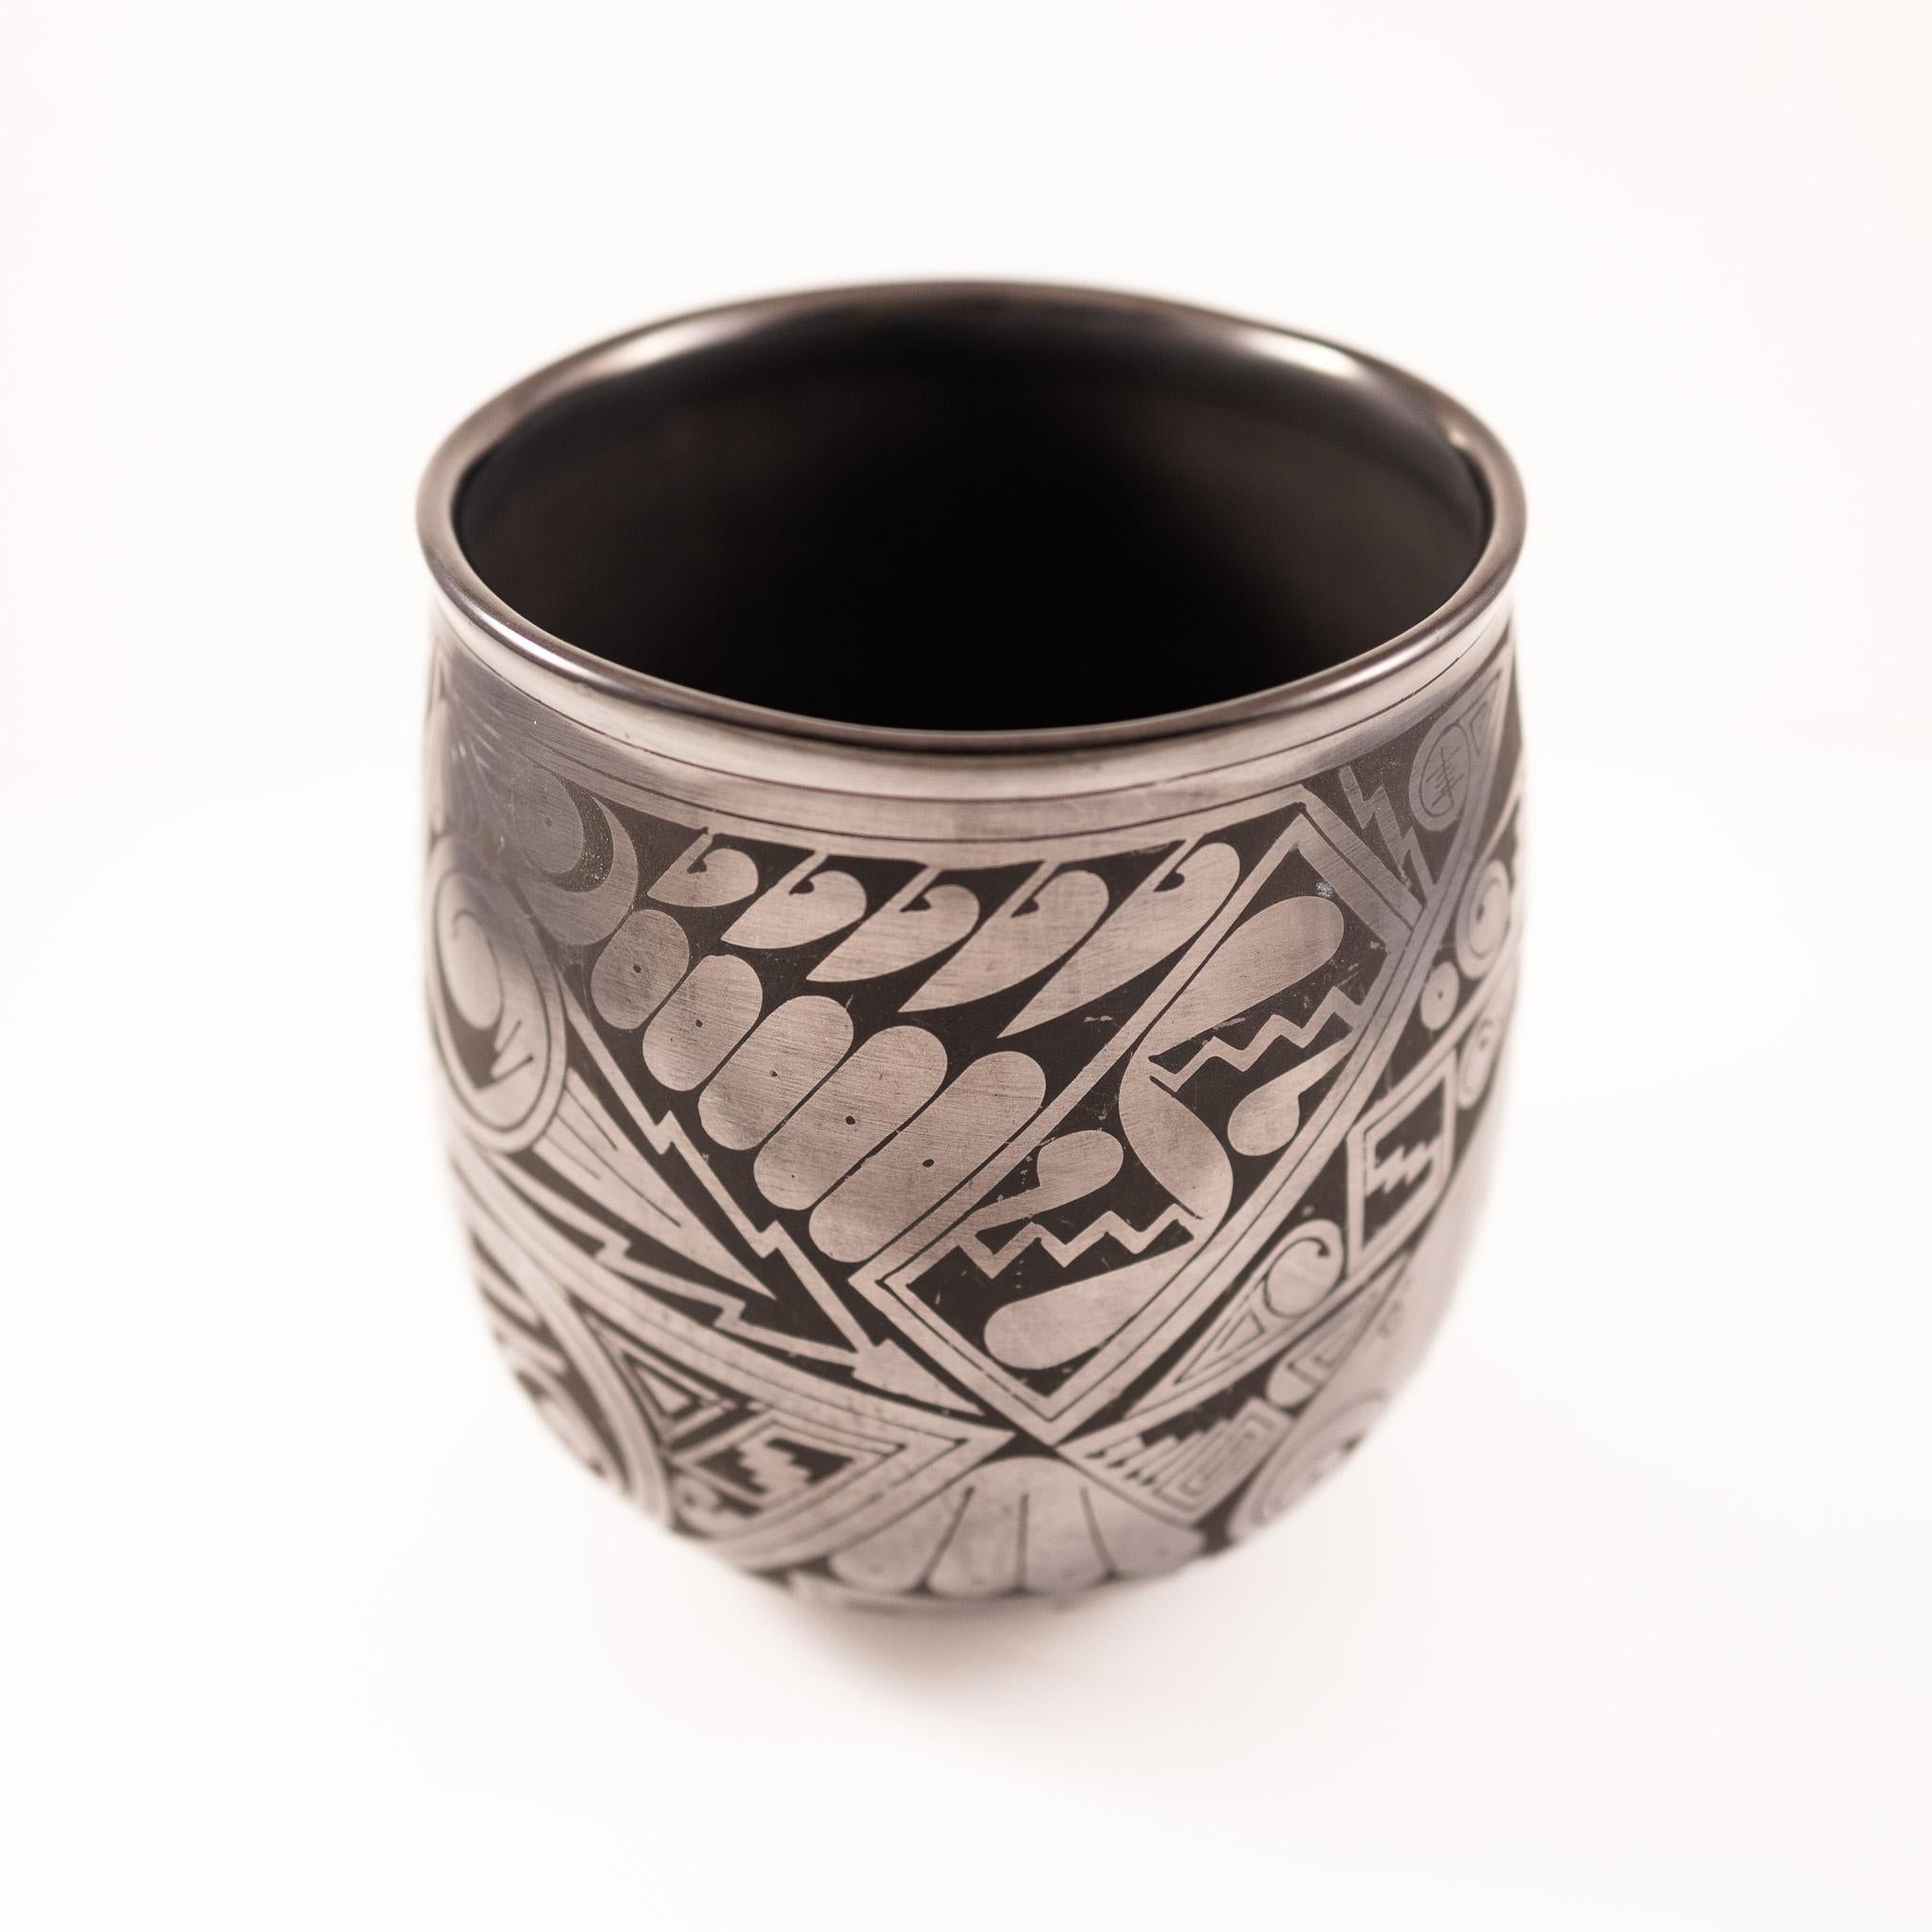 Mata Ortiz Style Black Ware Pottery - Art by Macario Ortiz